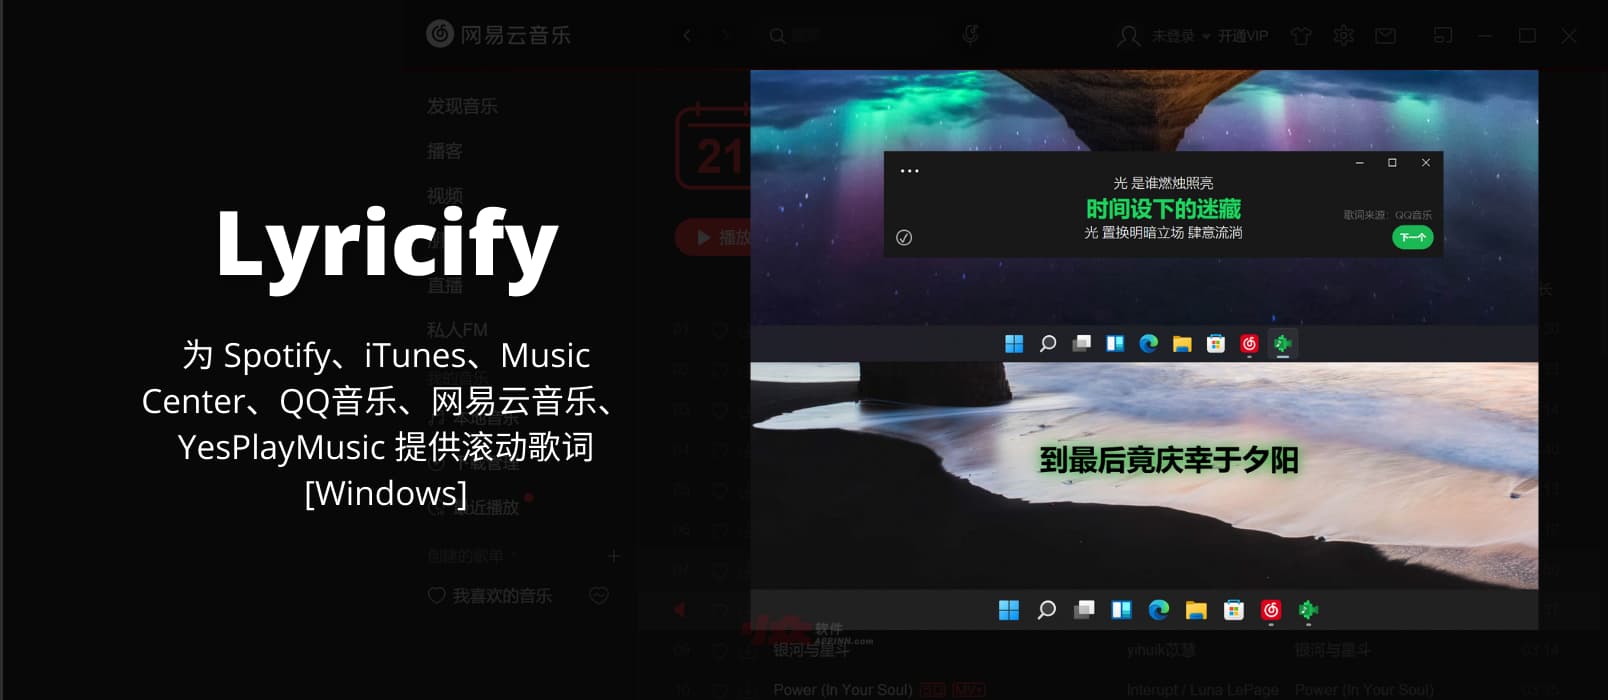 Lyricify - 为 Spotify、iTunes、Music Center、QQ音乐、网易云音乐、YesPlayMusic 提供滚动歌词[Windows]